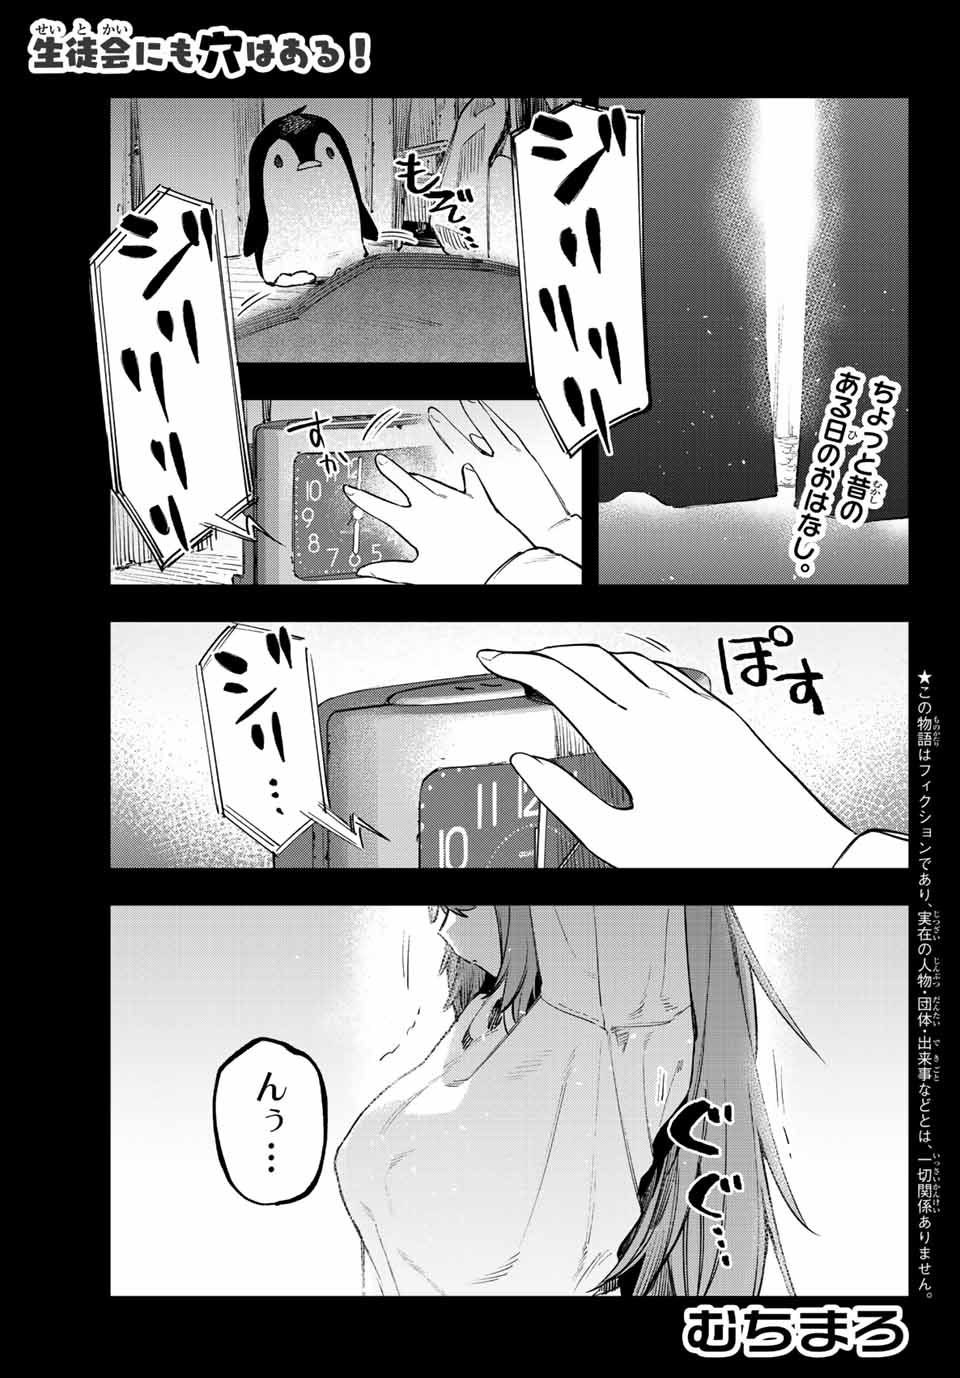 Seitokai mi mo Ana wa Aru! - Chapter 27 - Page 1